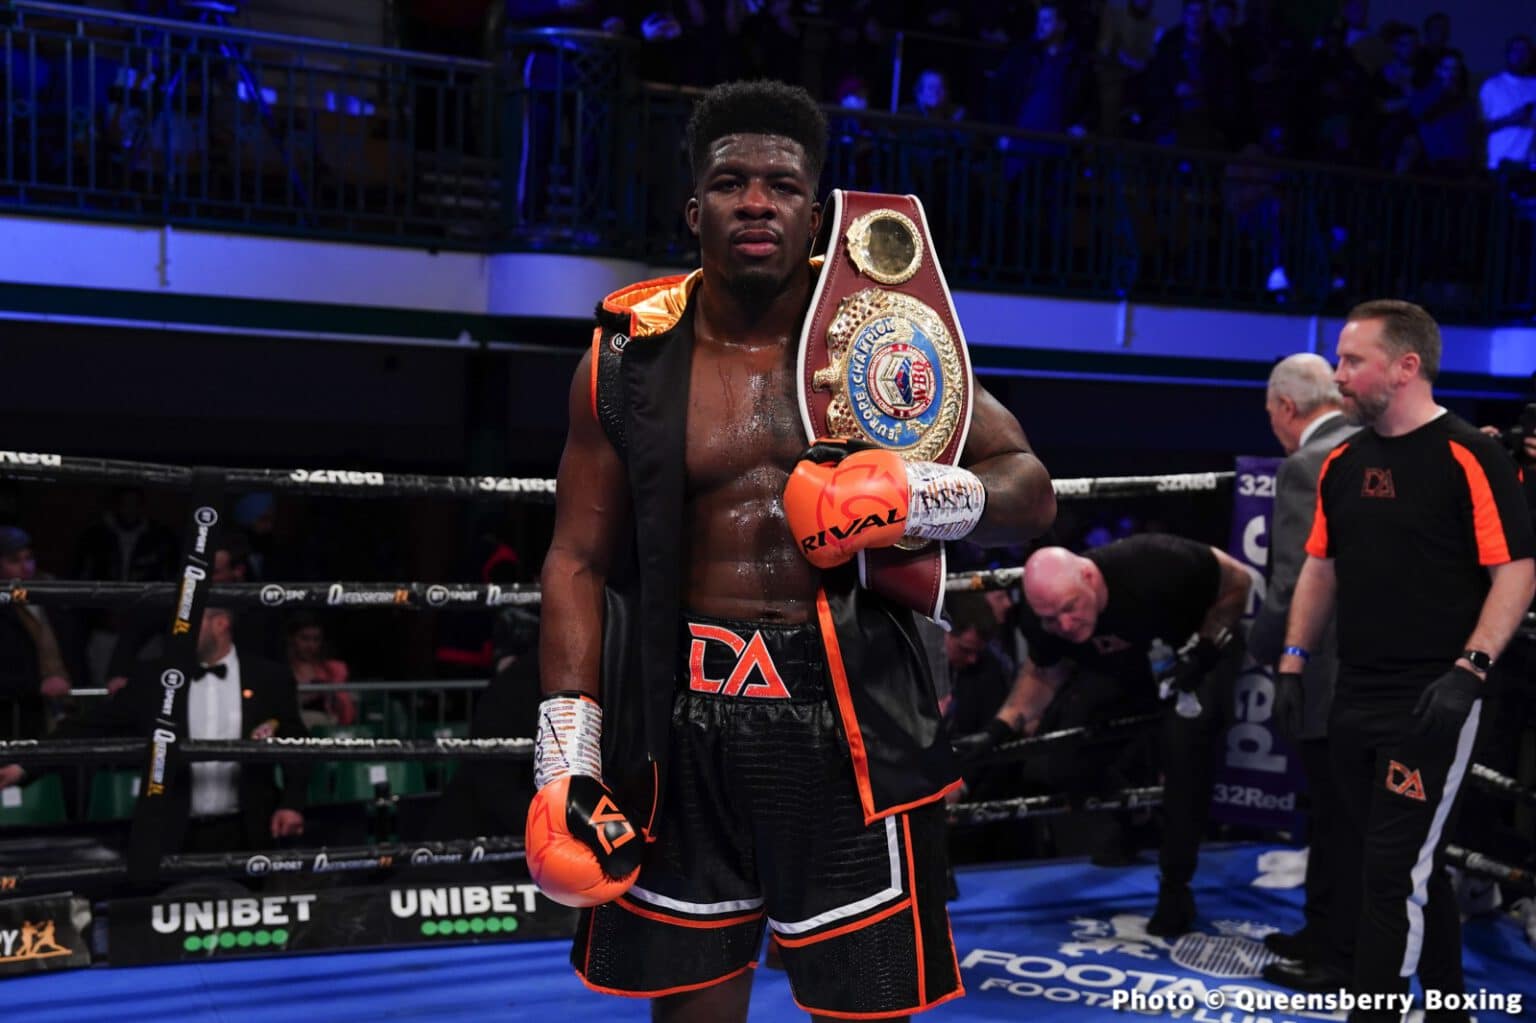 David Adeleye Stops Bezus at York Hall - Boxing Results